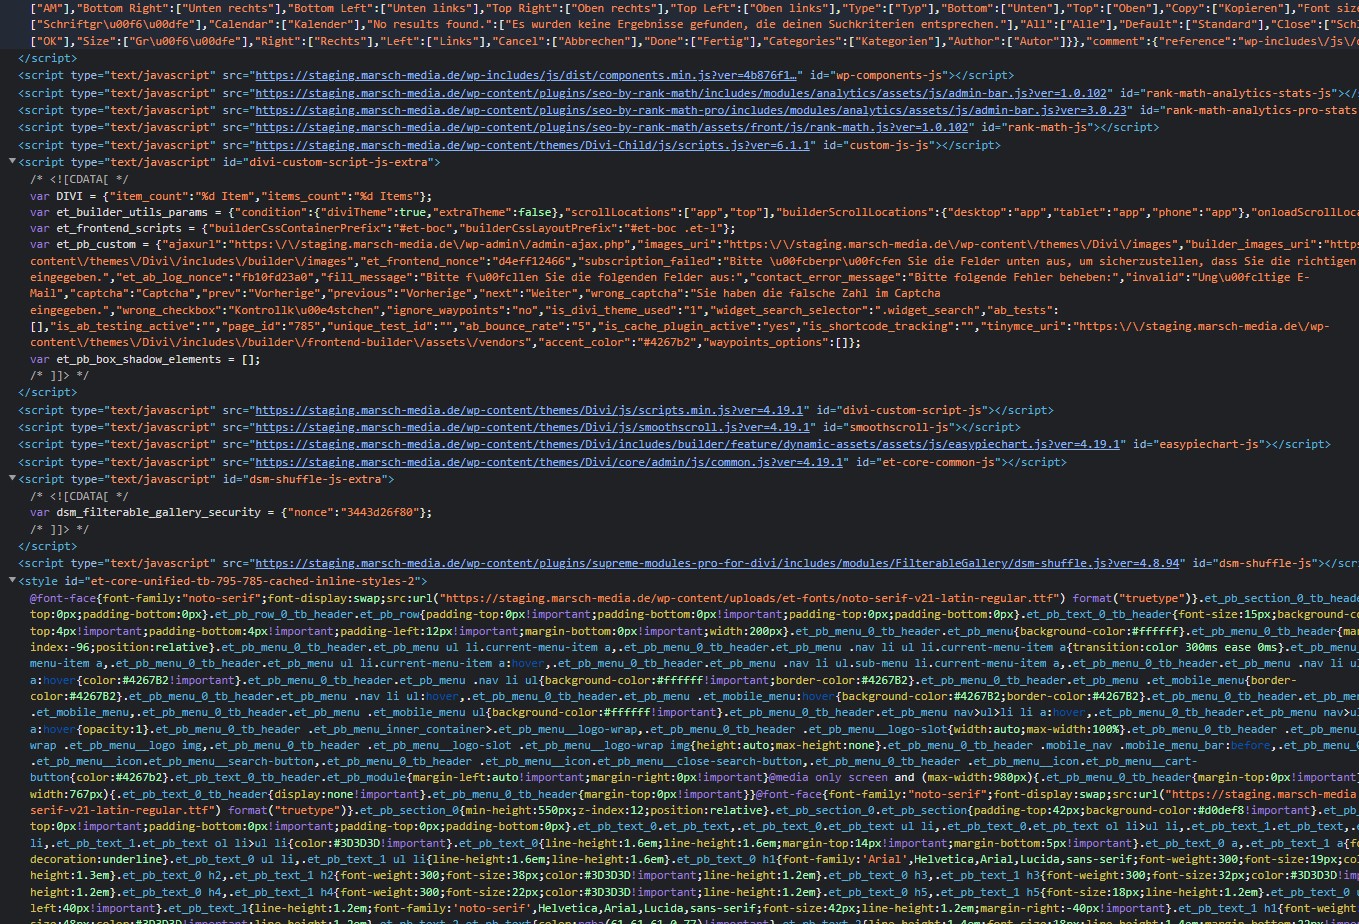 Ausschnitt des HTML Code einer Webseite von marsch-media